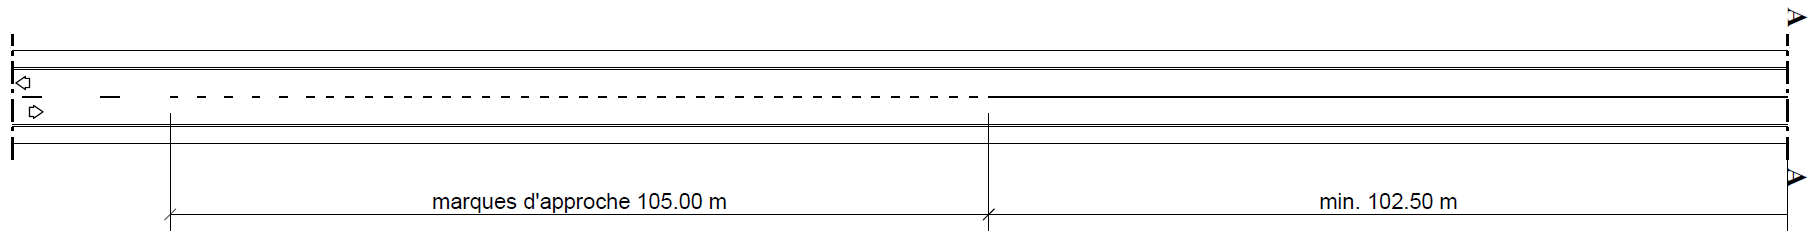 C.2.03.01.001 Figure 11.png